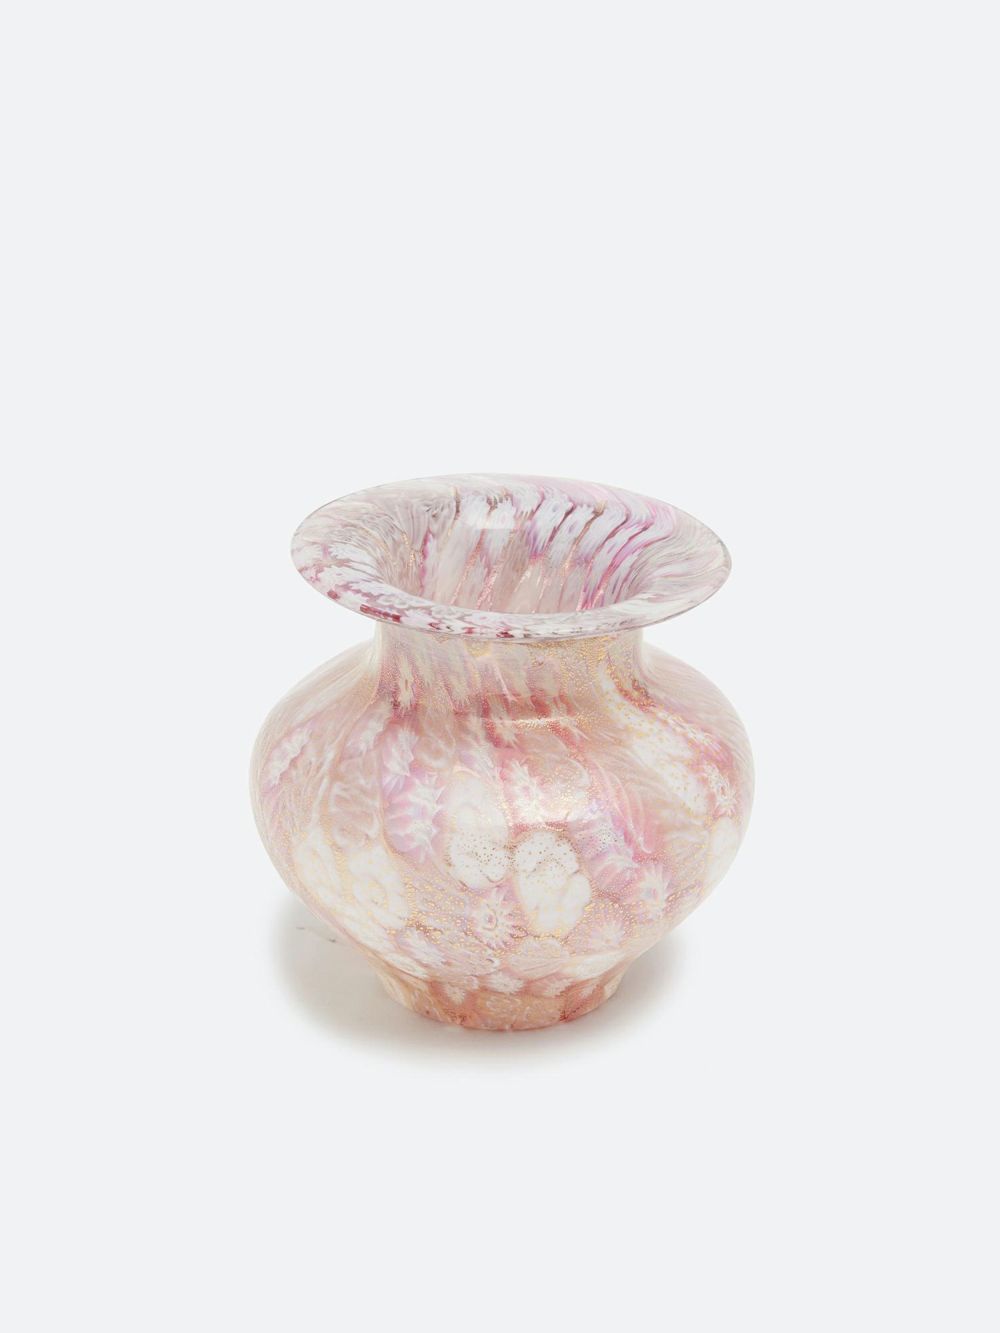 ベネチアガラス 小花器「はなばたけ」ローザMIX |ガラス器 | WAKO 